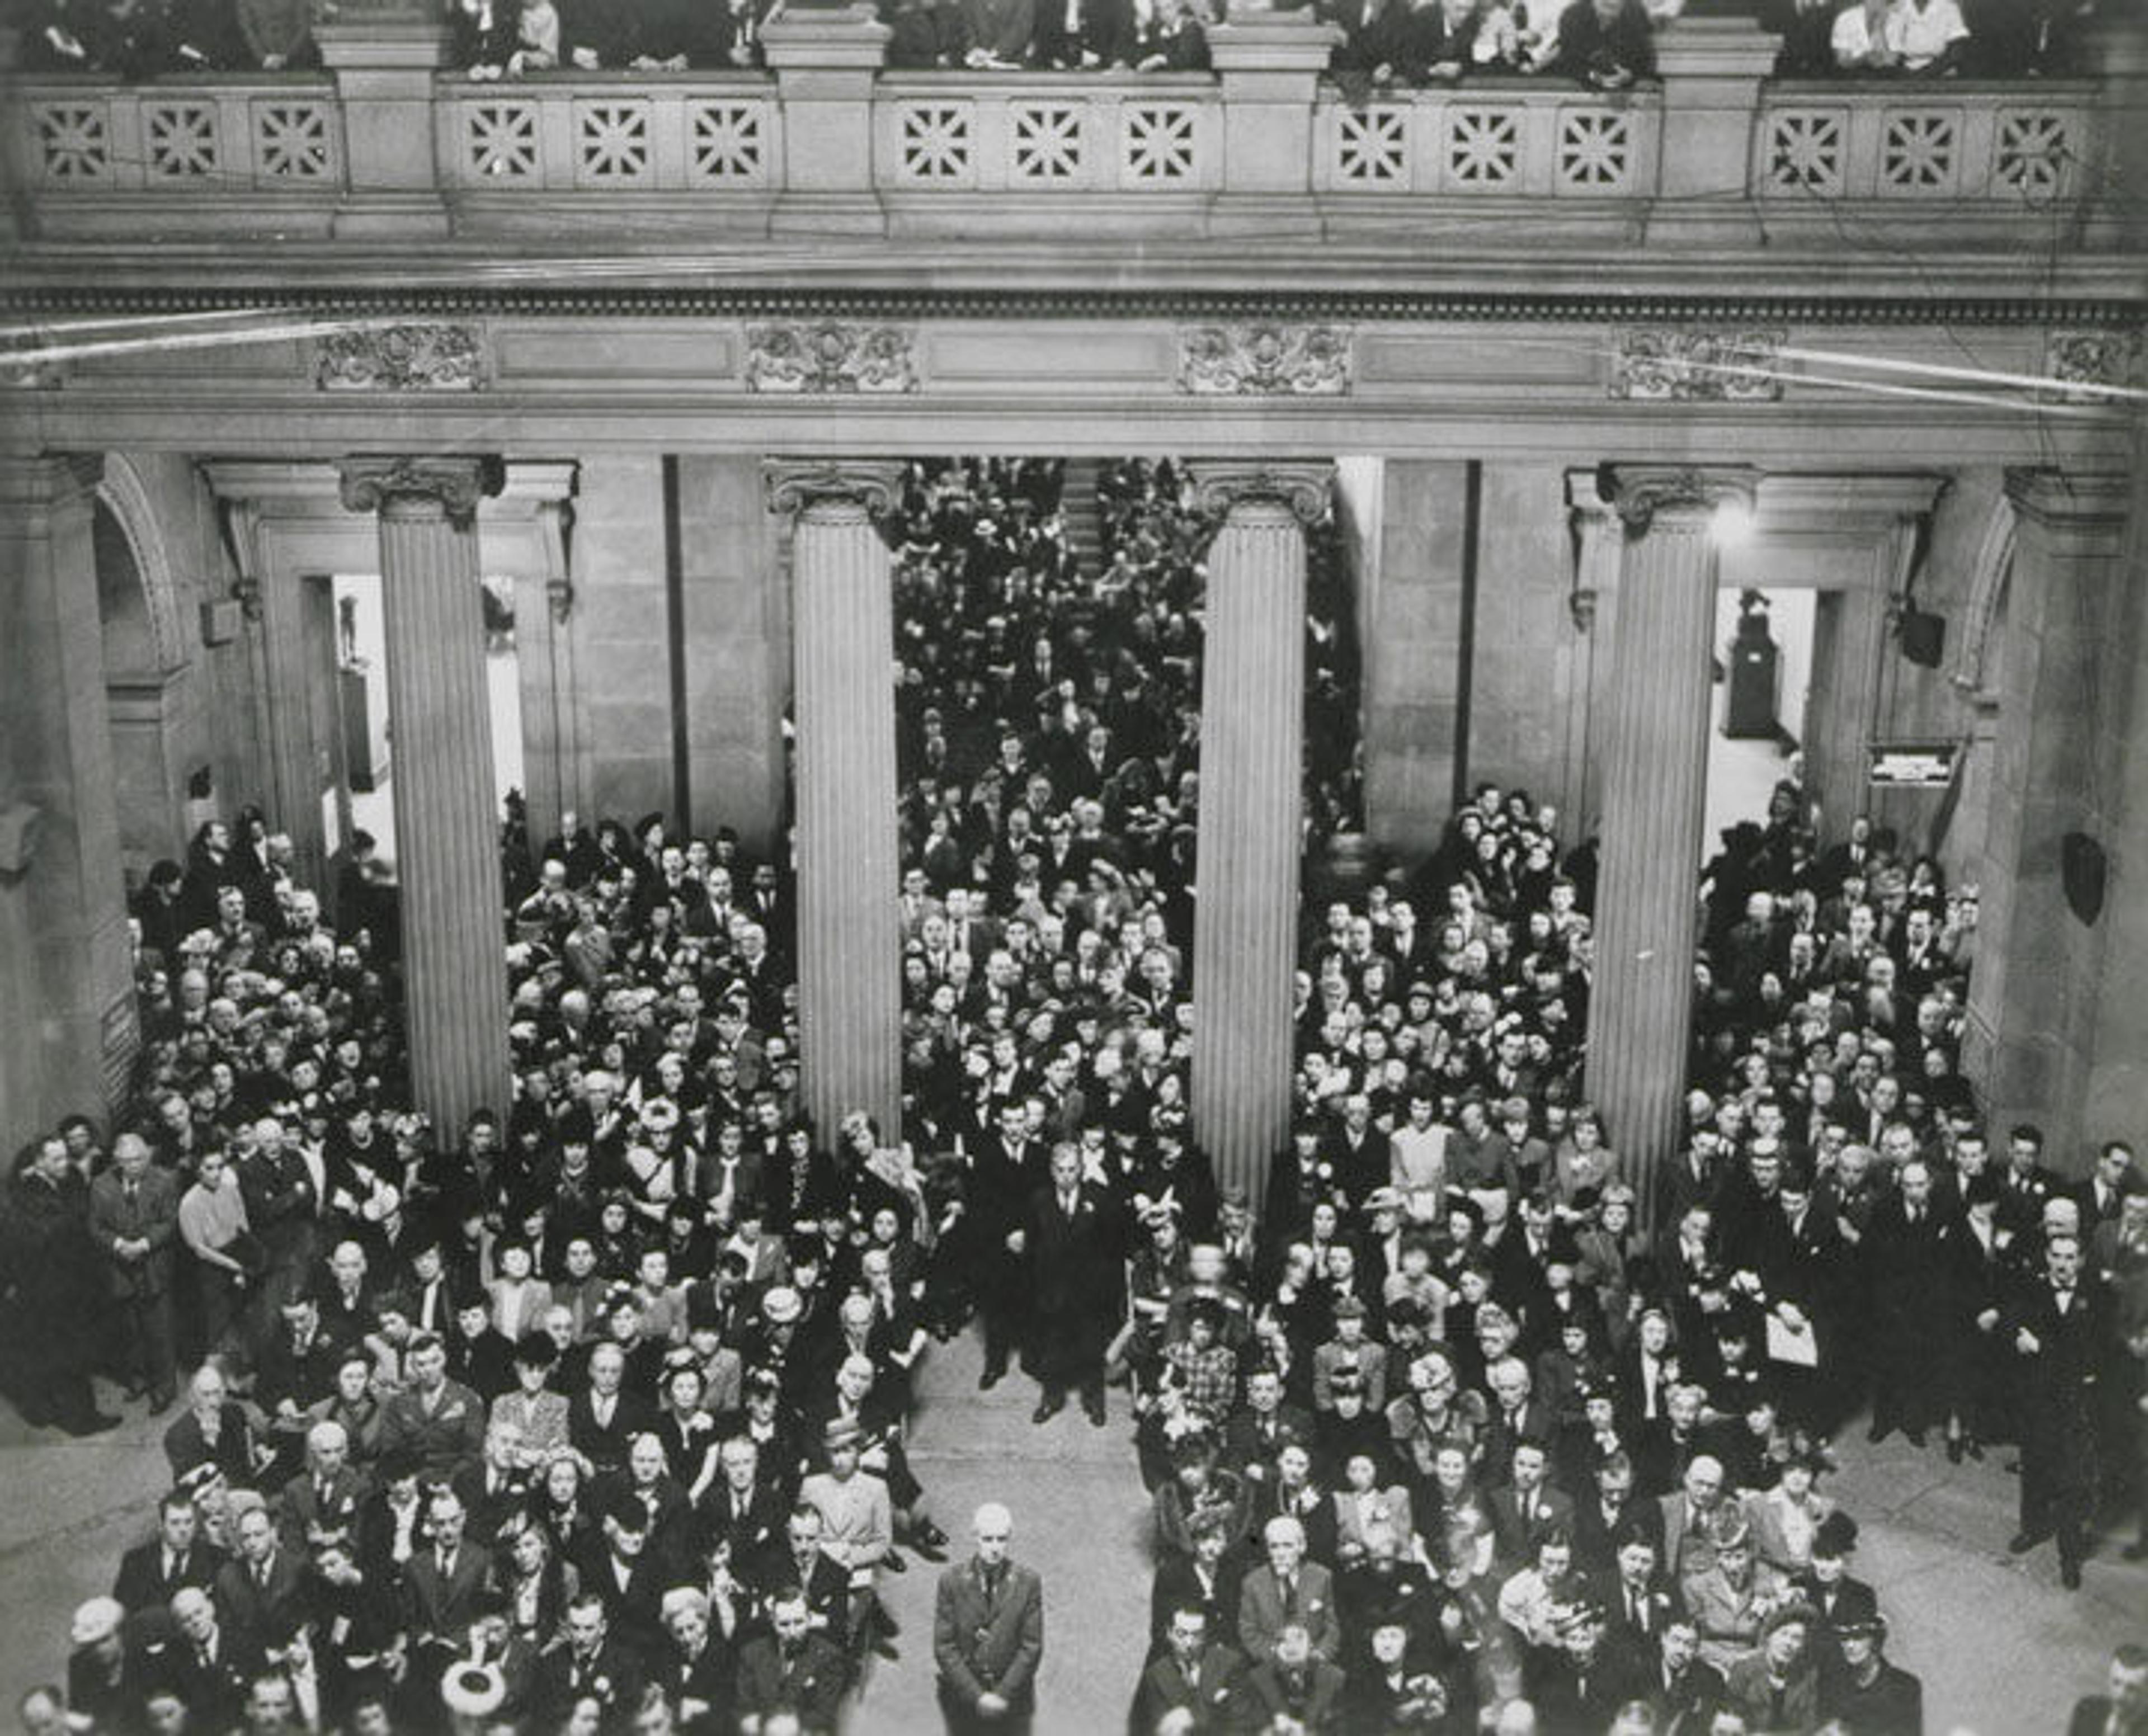 Crowd at The Met